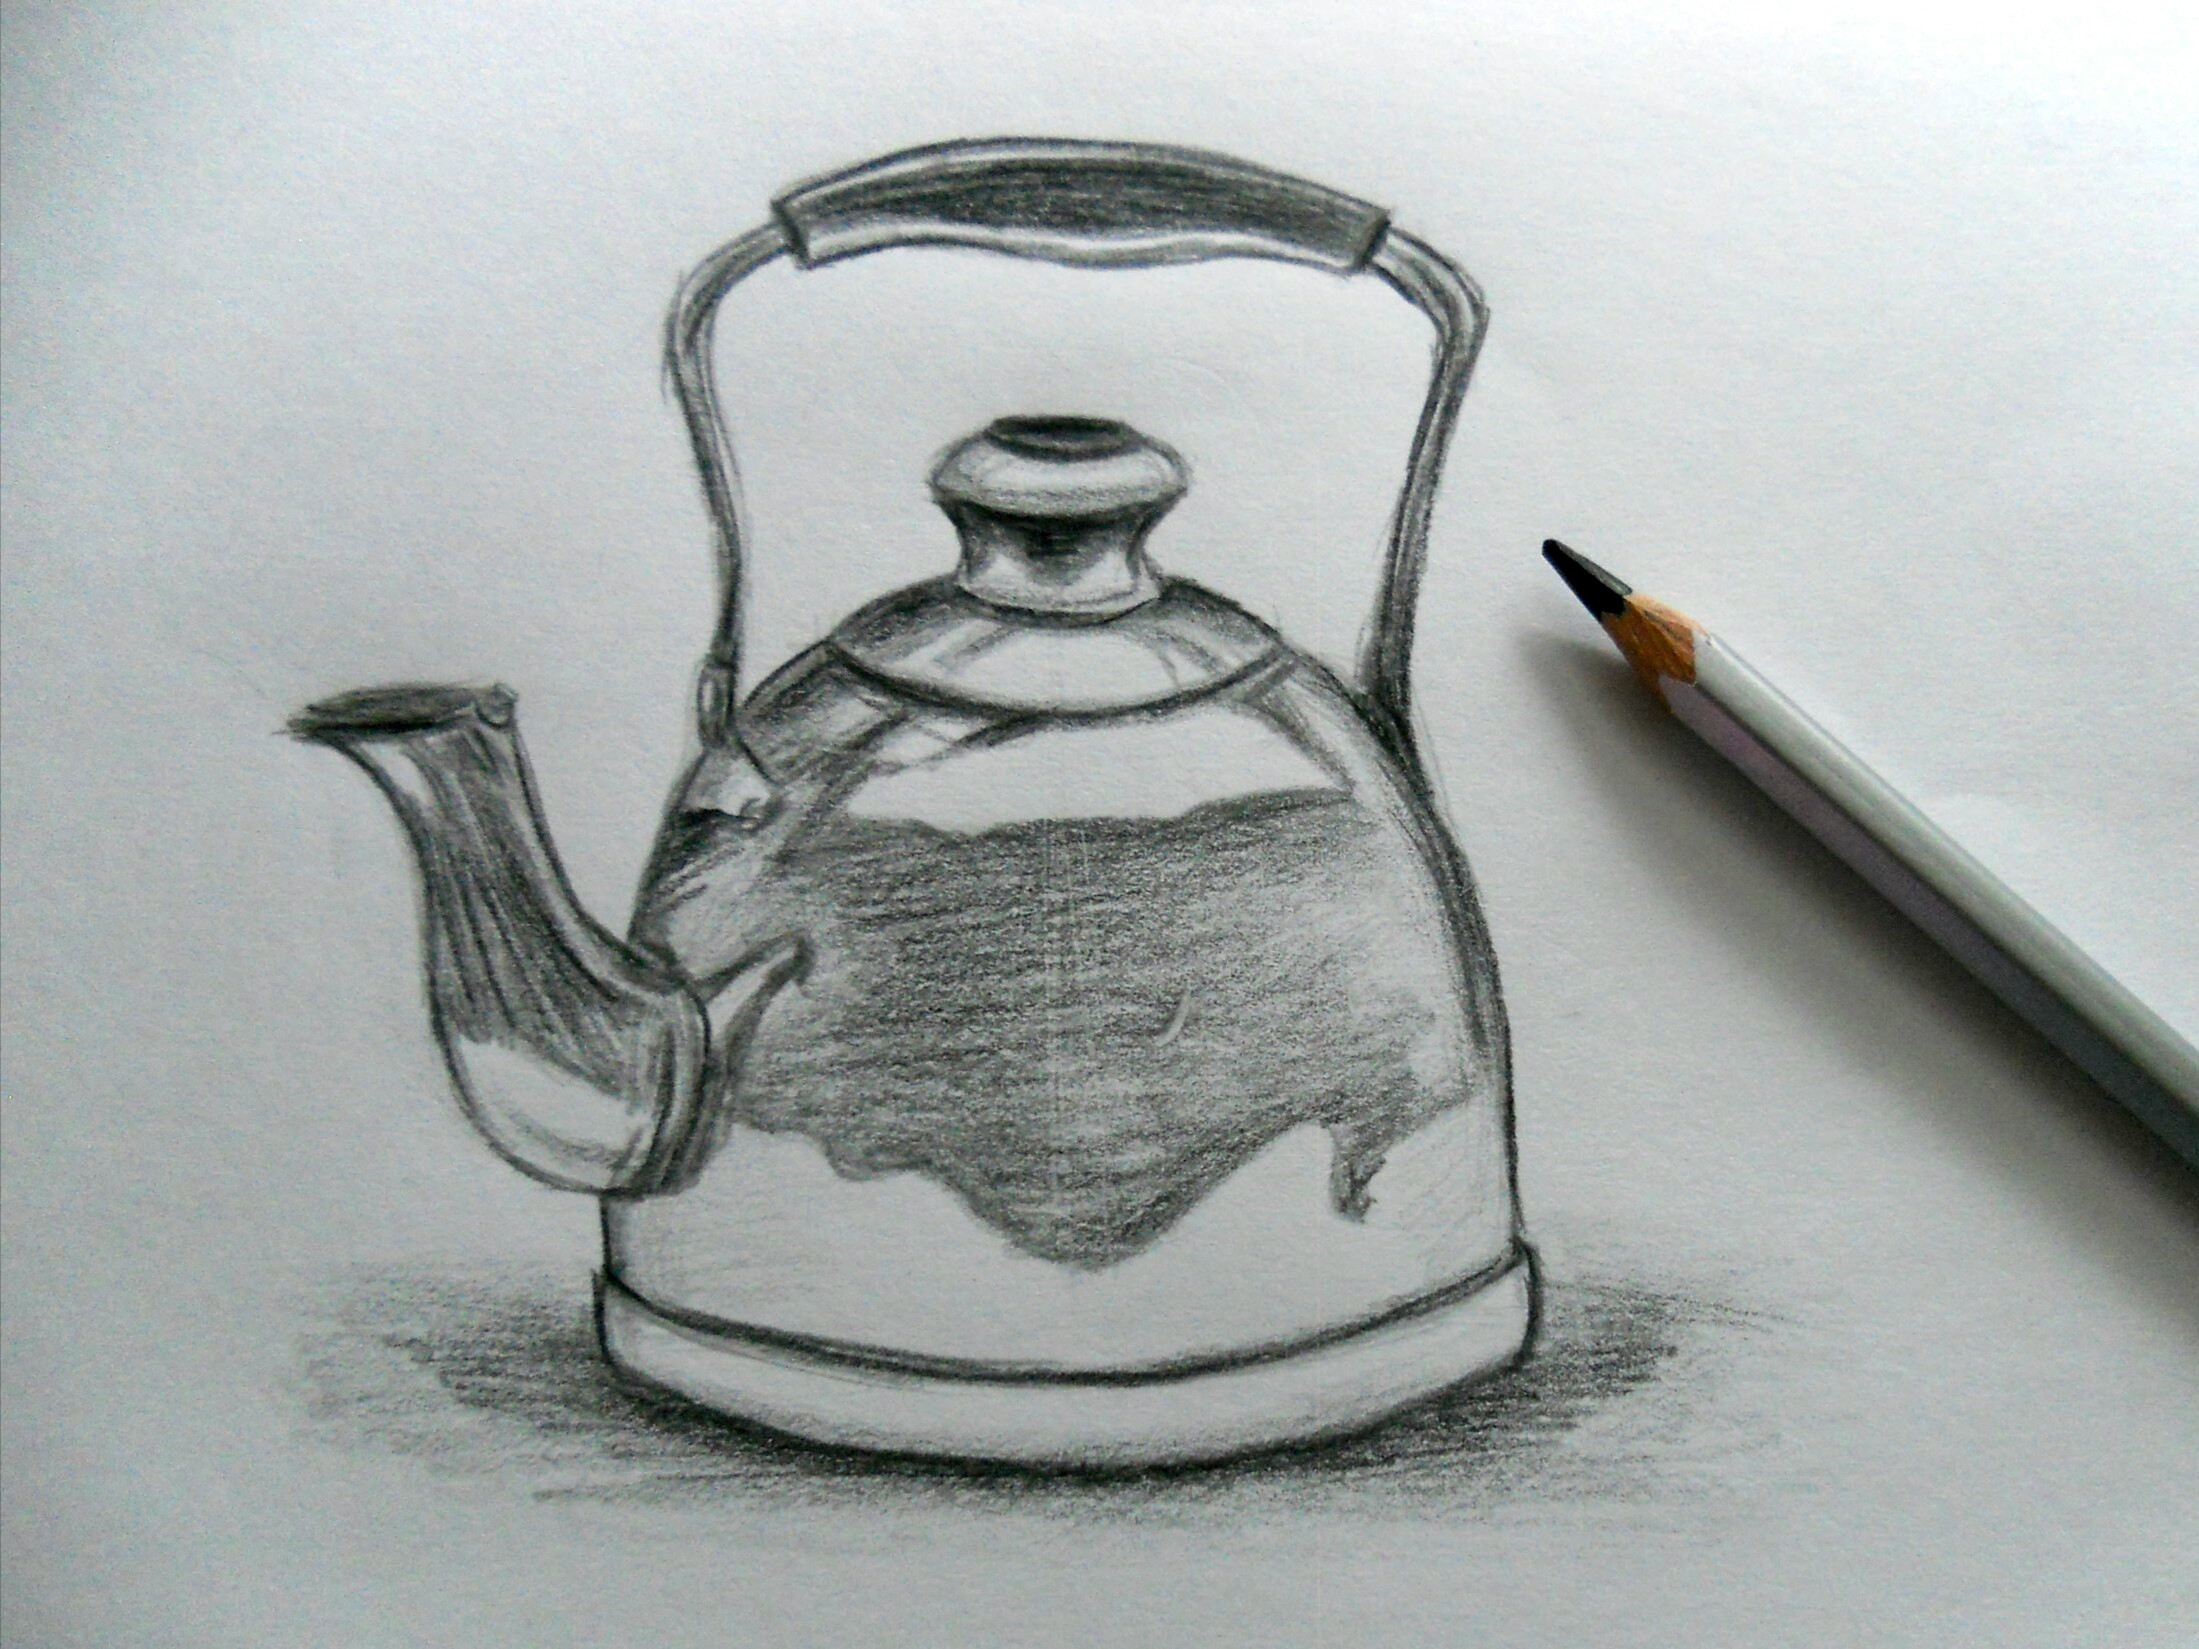 Изобразить предмет быта. Чайник карандашом. Рисование для чайников. Чайник рисунок карандашом. Металлический чайник карандашом.